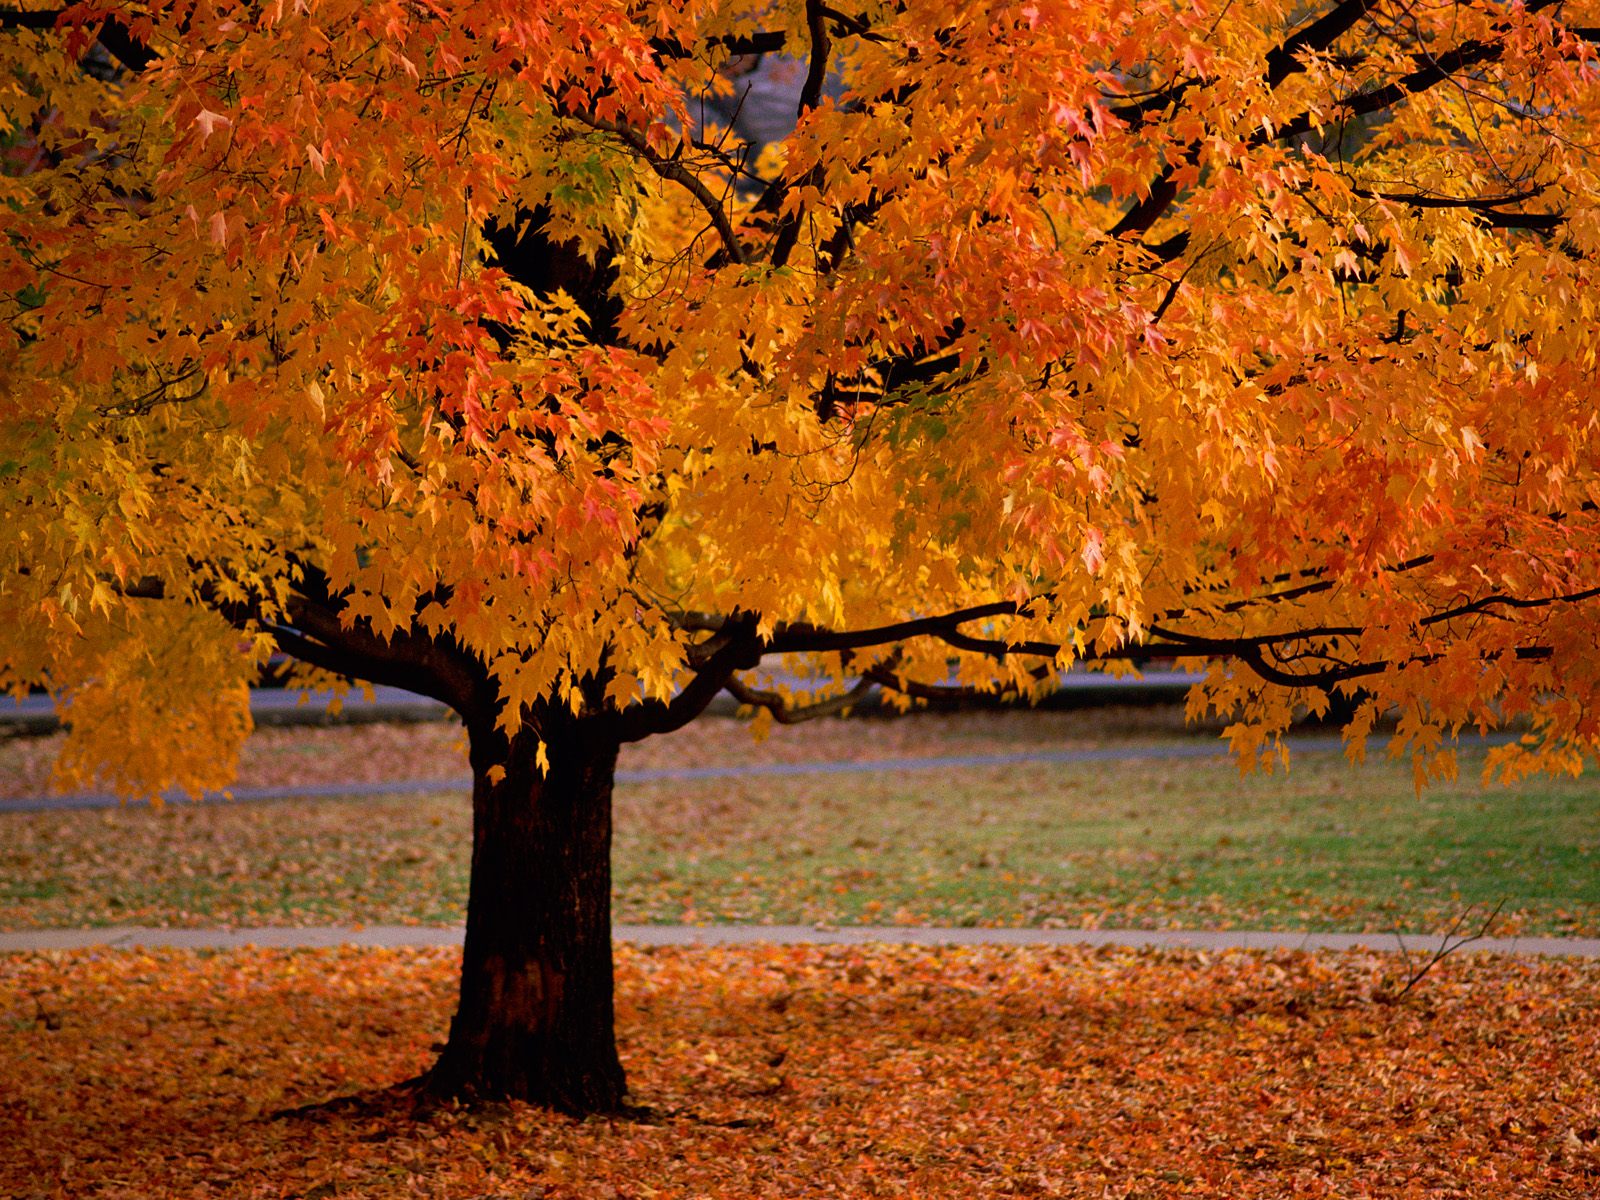 壁纸1280×1024壁纸 唯美 秋天红色的落叶图片壁纸,浓浓秋色-秋天树叶摄影壁纸图片-风景壁纸-风景图片素材-桌面壁纸